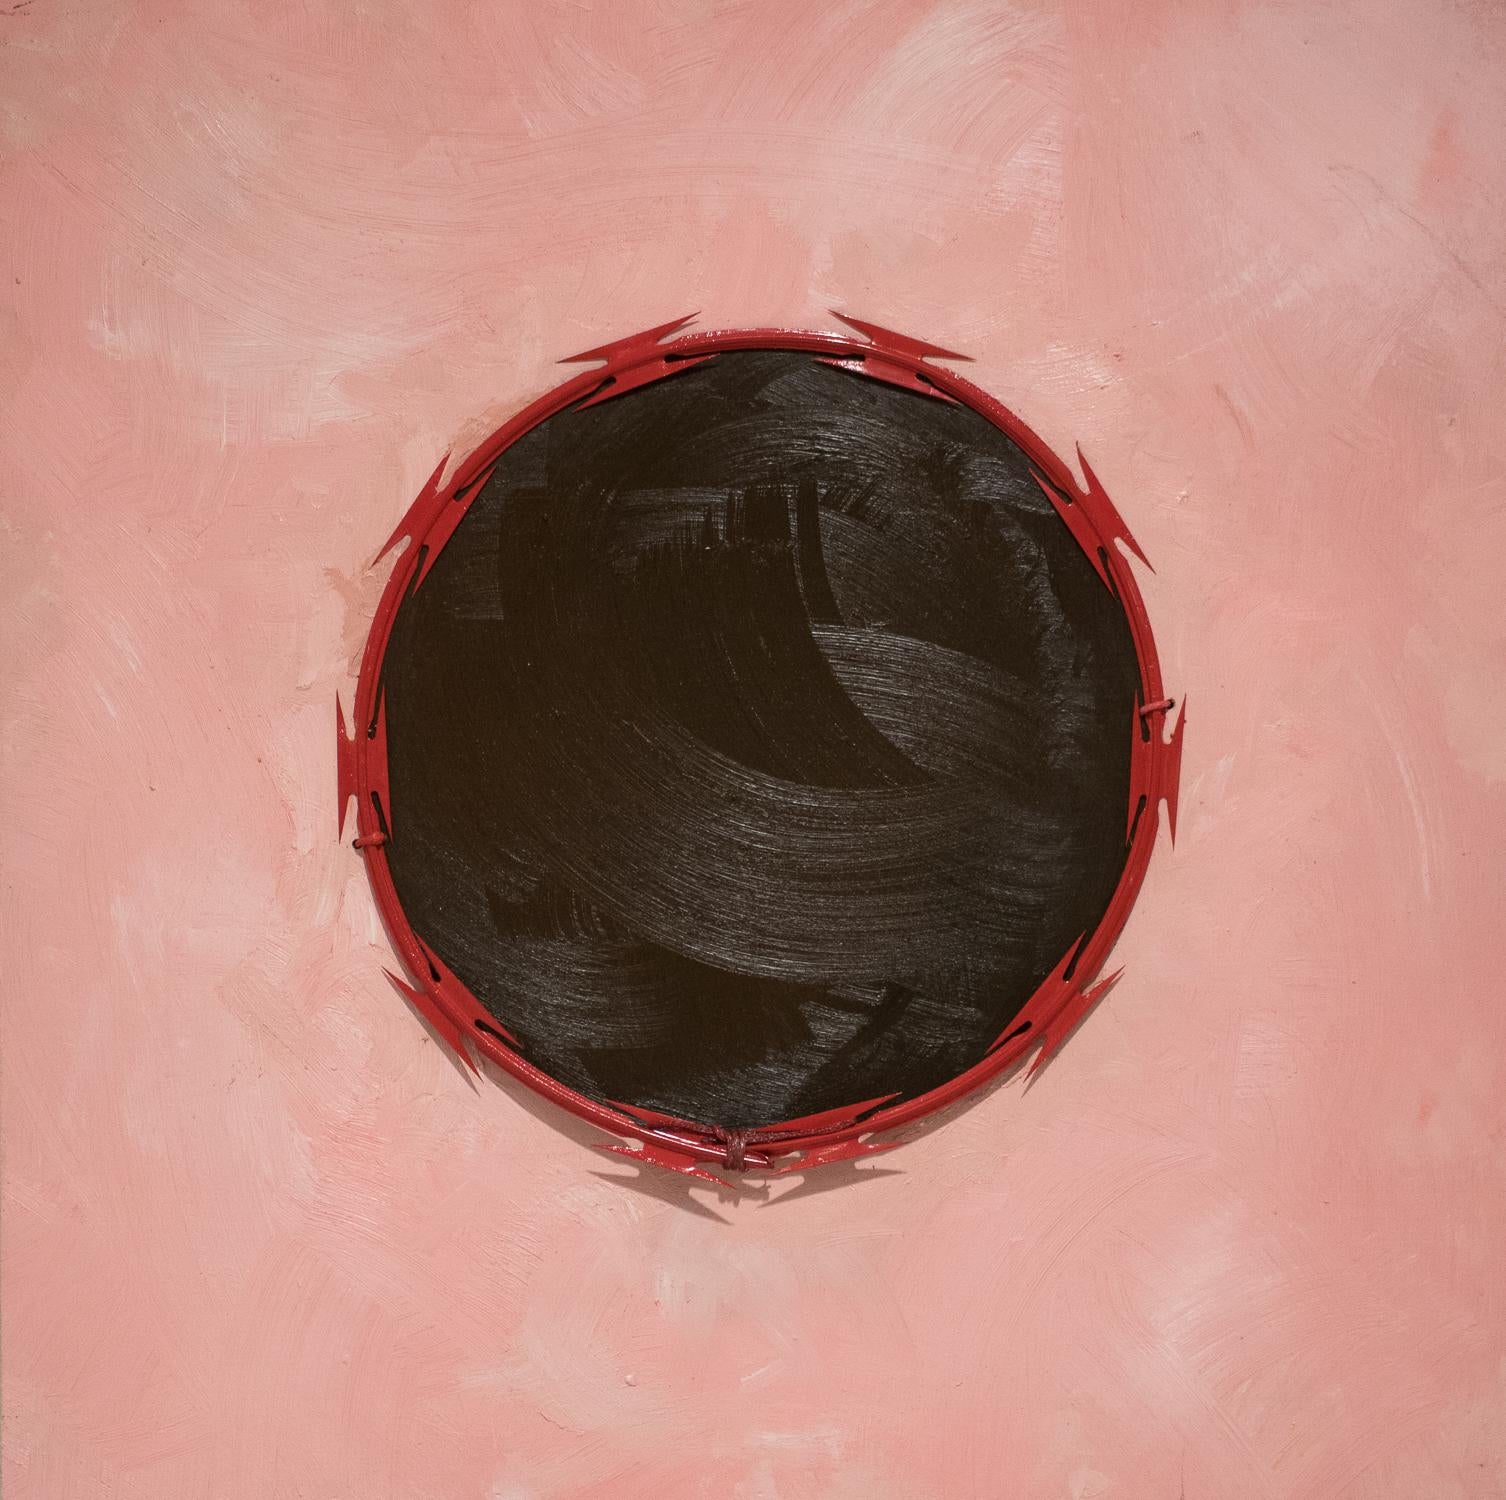 Red Line n° 2 - Peinture politique abstraite, huile et fil de fer rasoir sur bois - rose - Mixed Media Art de Omari Booker